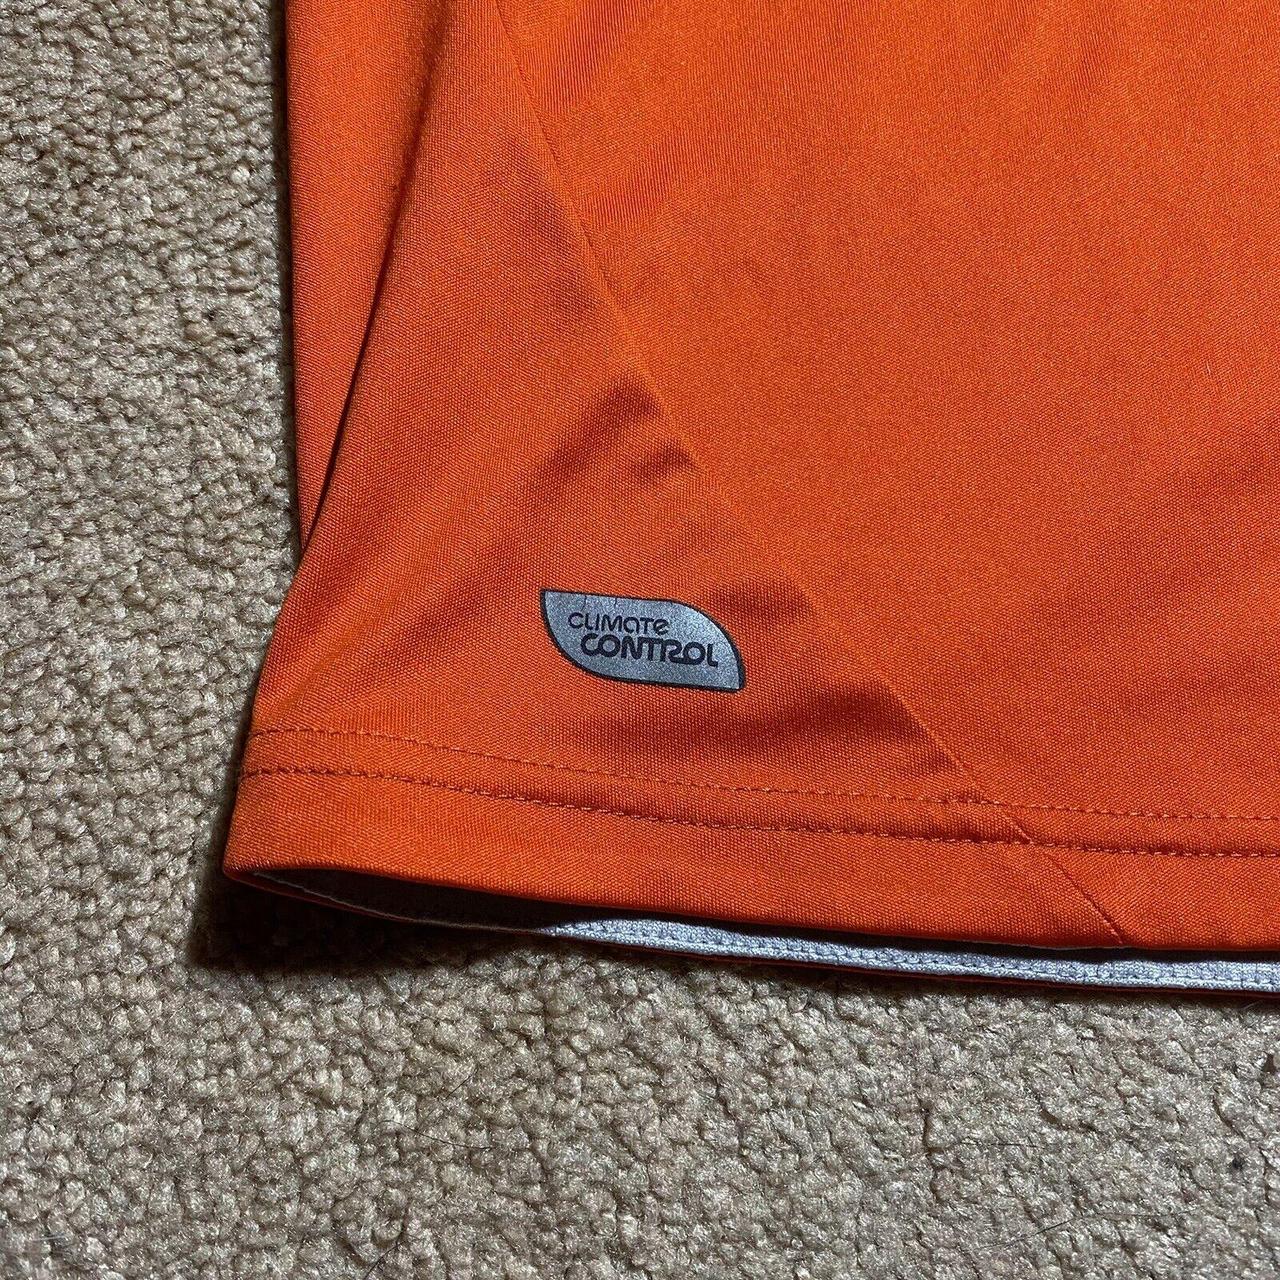 Umbro Men's Orange T-shirt | Depop